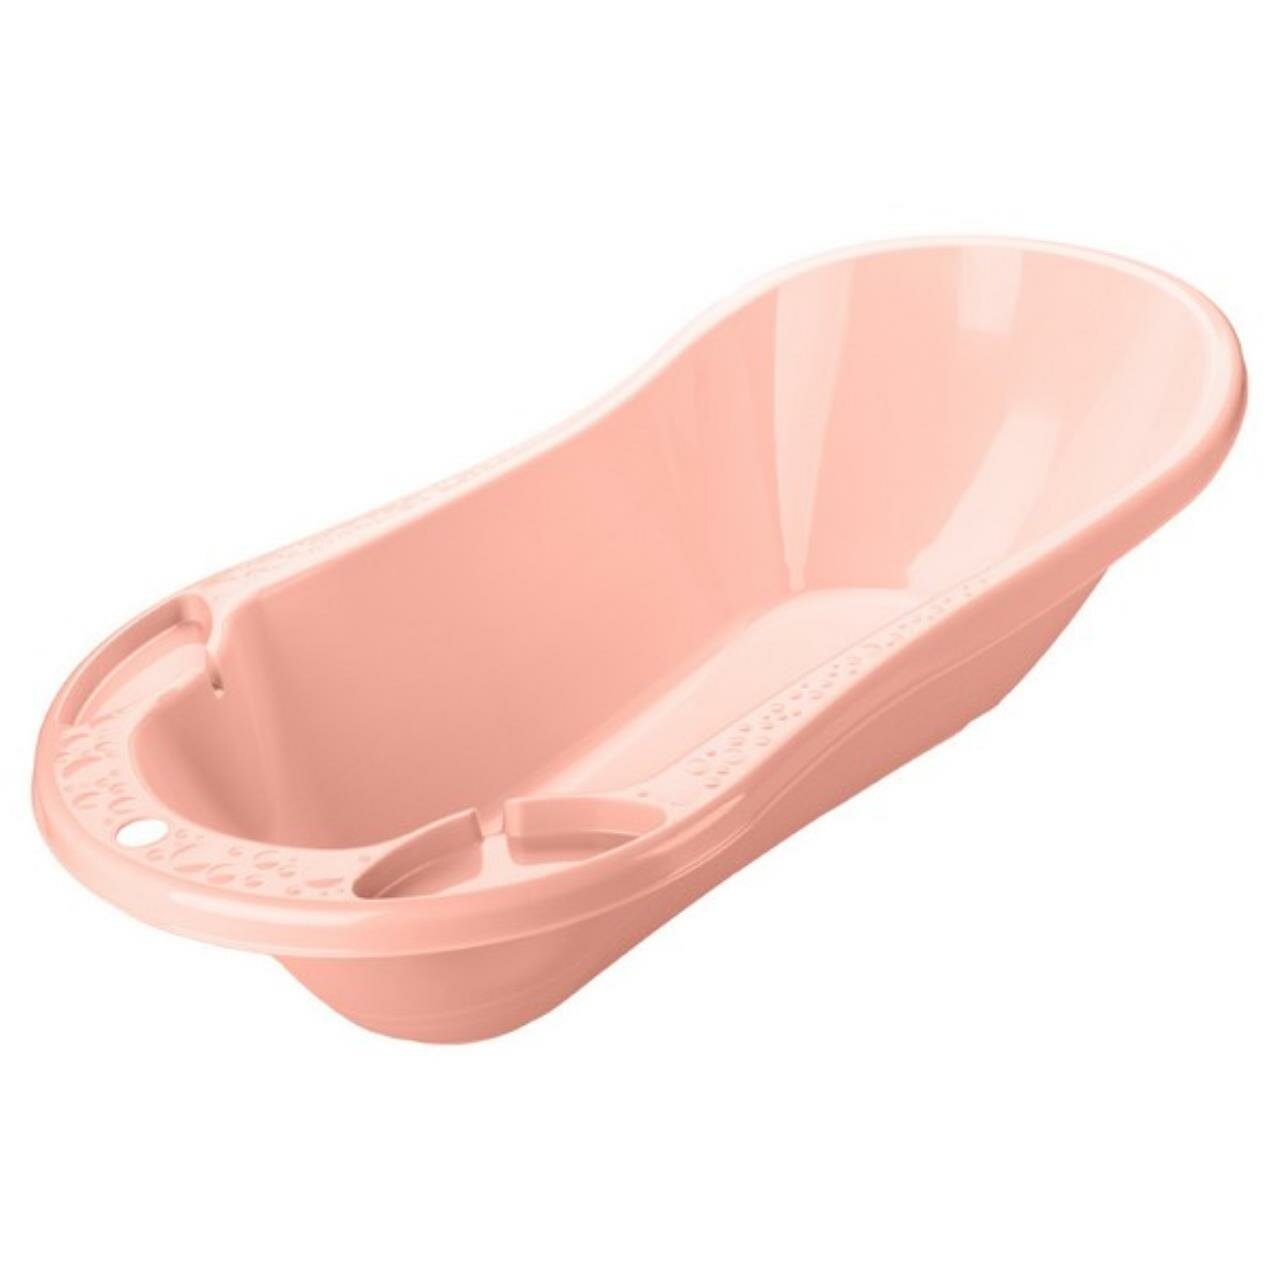 Ванна детская с клапаном для слива воды 46л, цвет: светло-розовый, 100x49x30,5 см